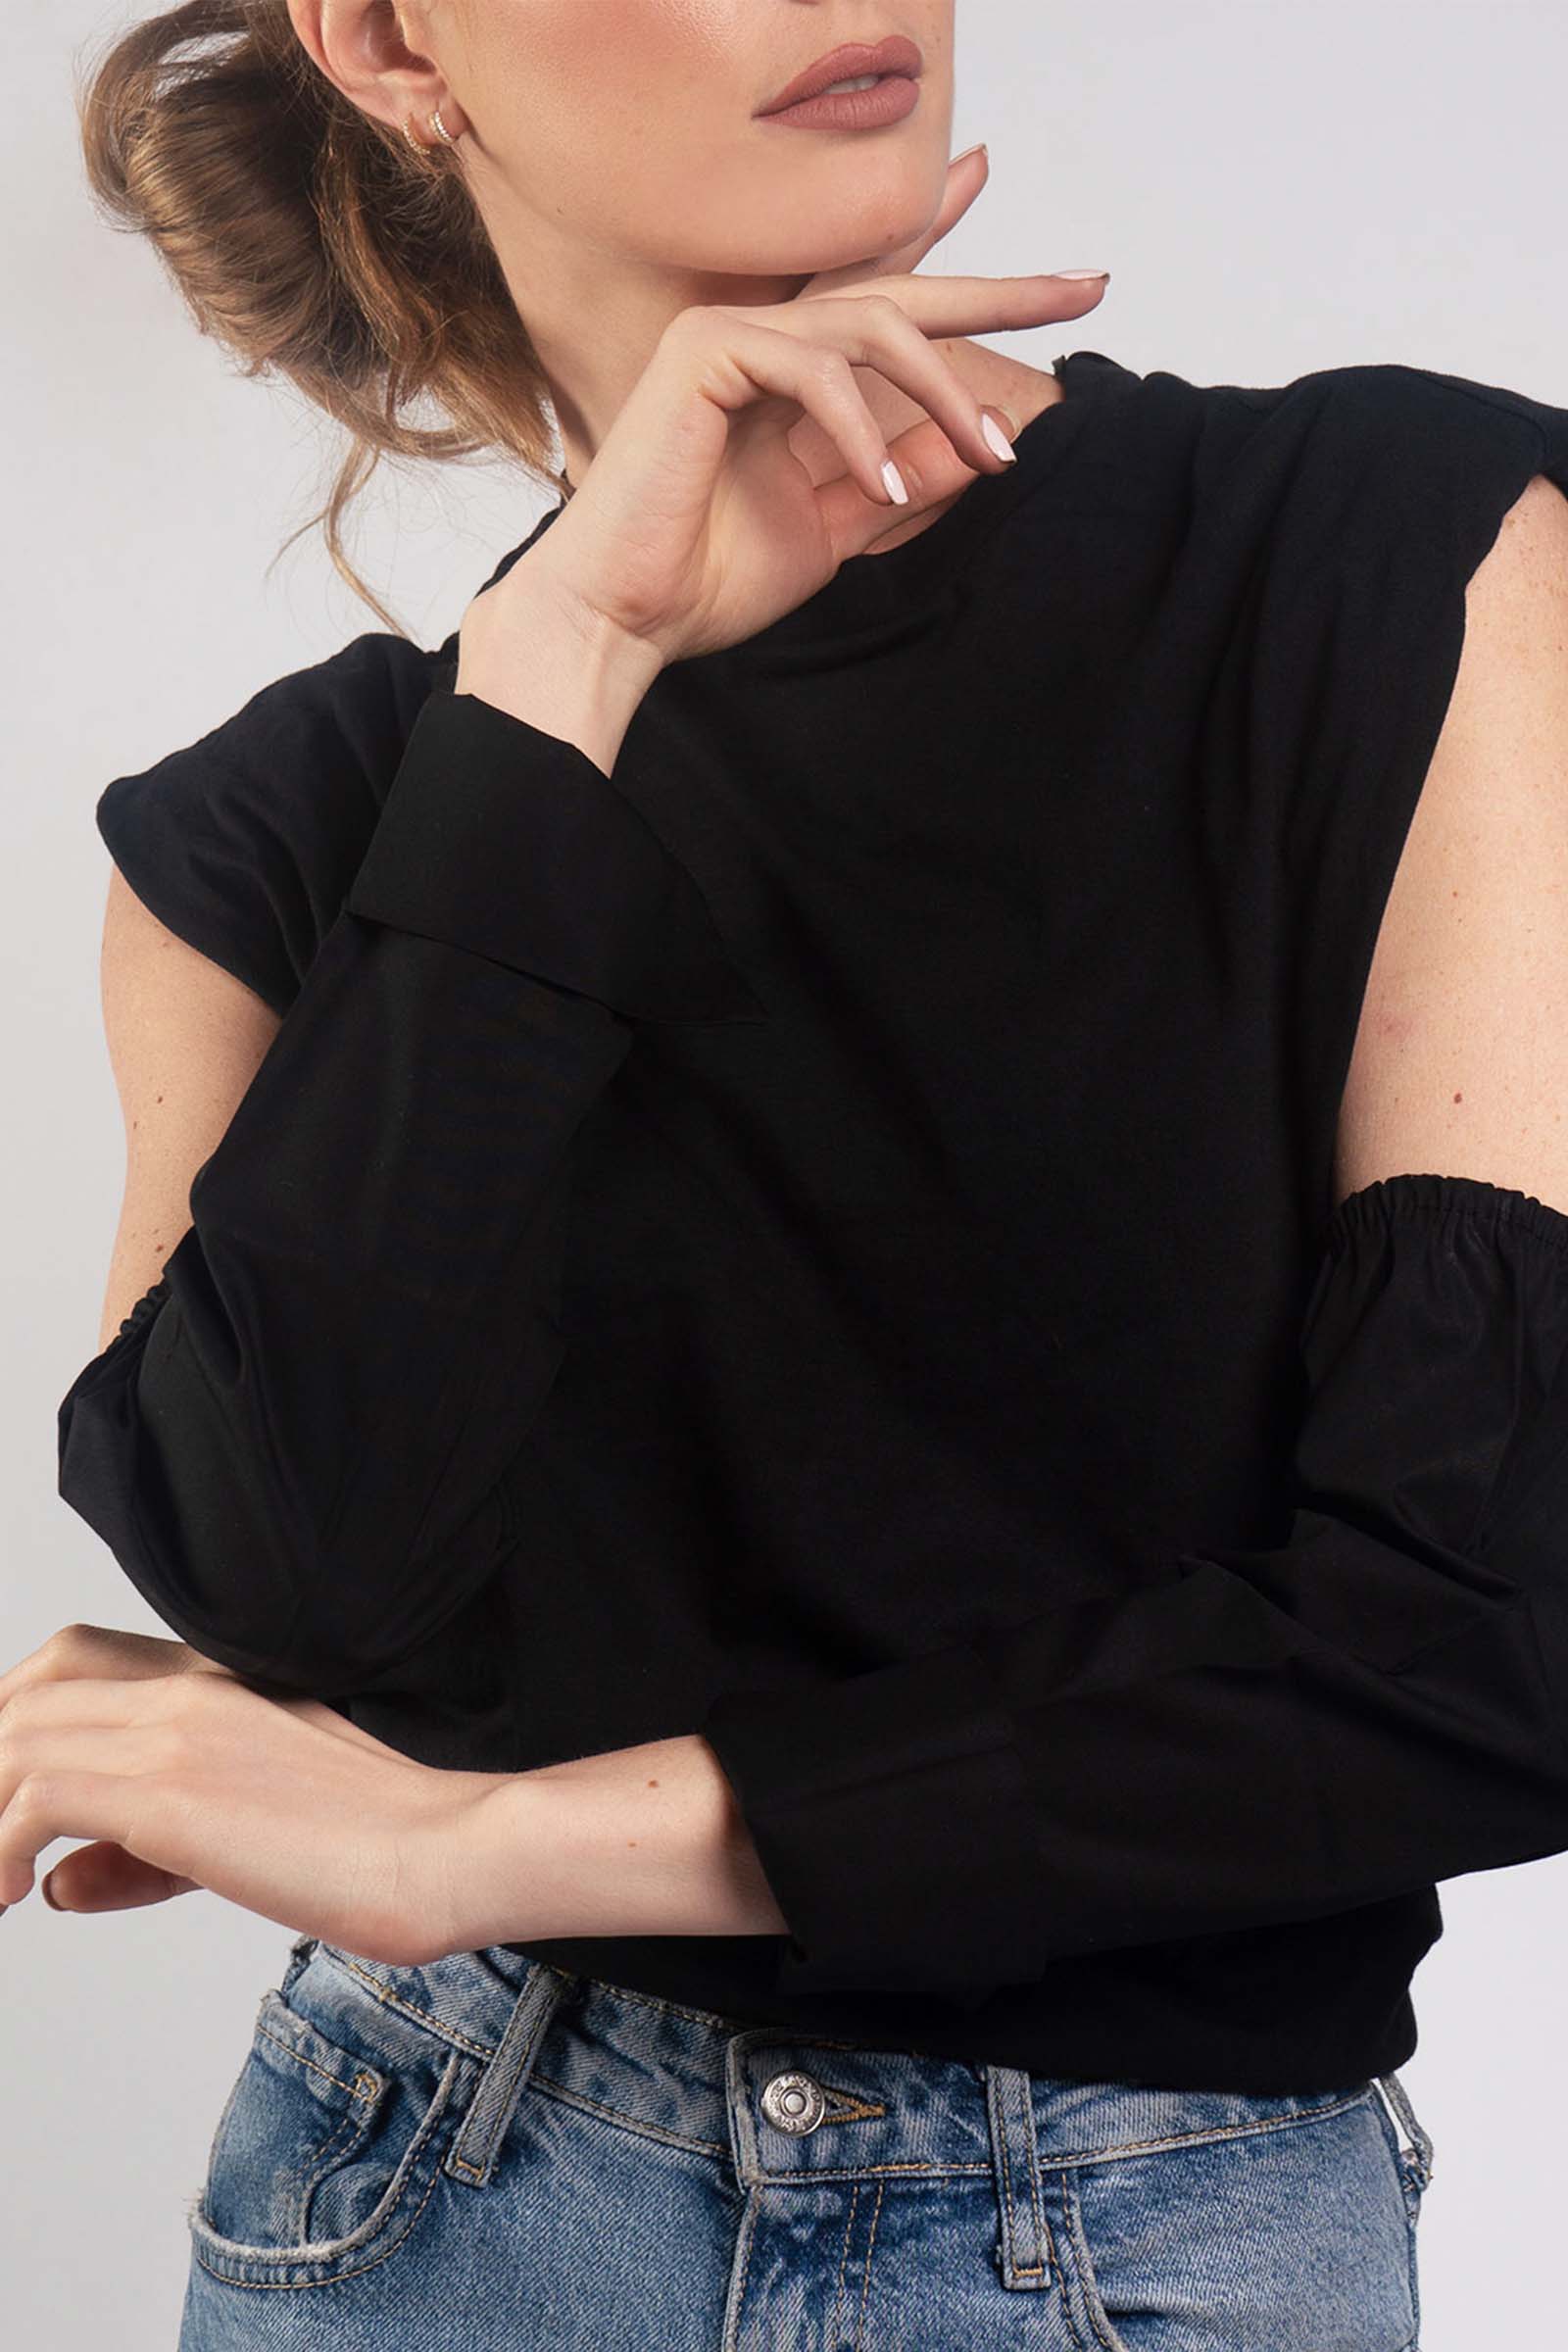 Black Shirt Sleeves - Foulard Store - Buy modest sleeves for women